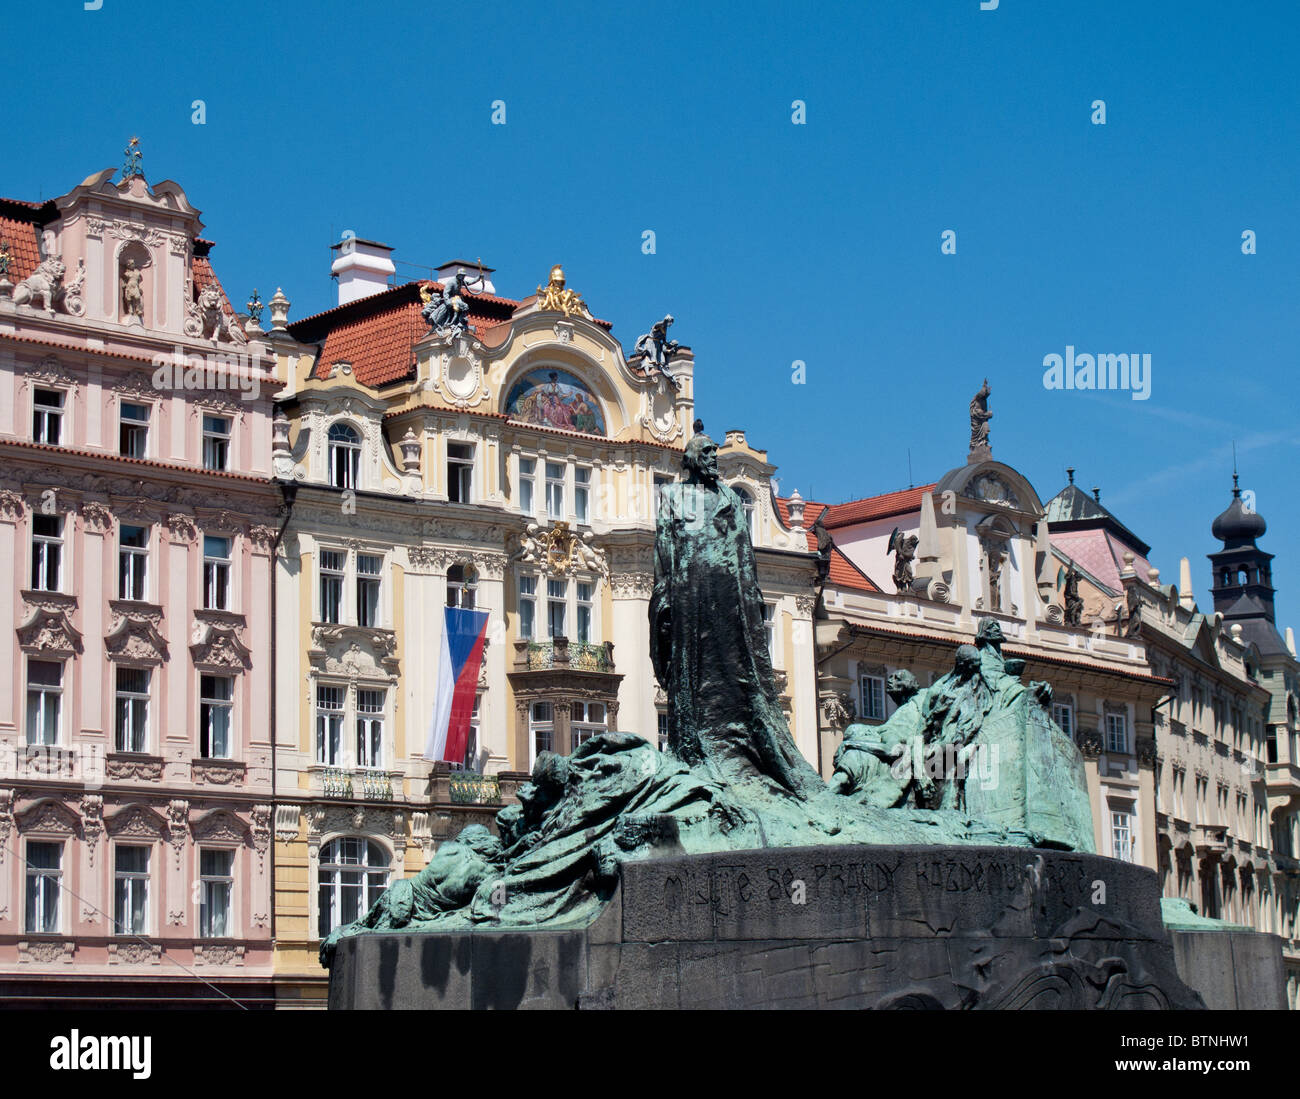 Antica statua nella piazza principale di Praga nella Repubblica Ceca Foto Stock